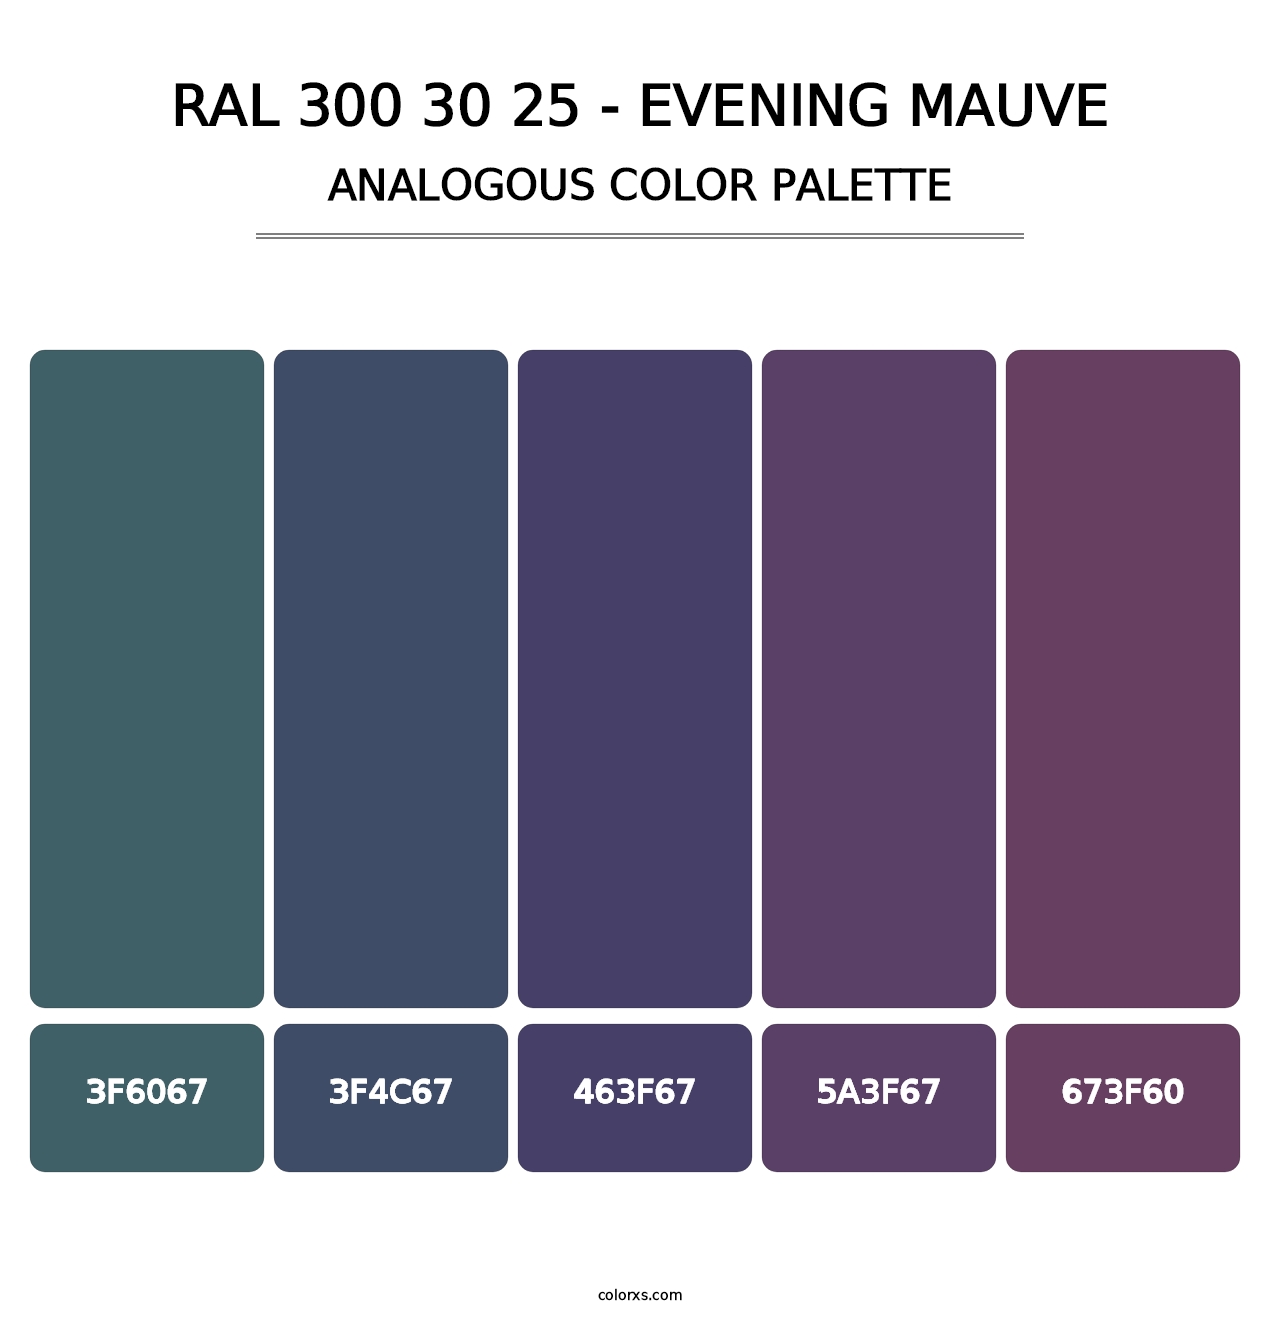 RAL 300 30 25 - Evening Mauve - Analogous Color Palette